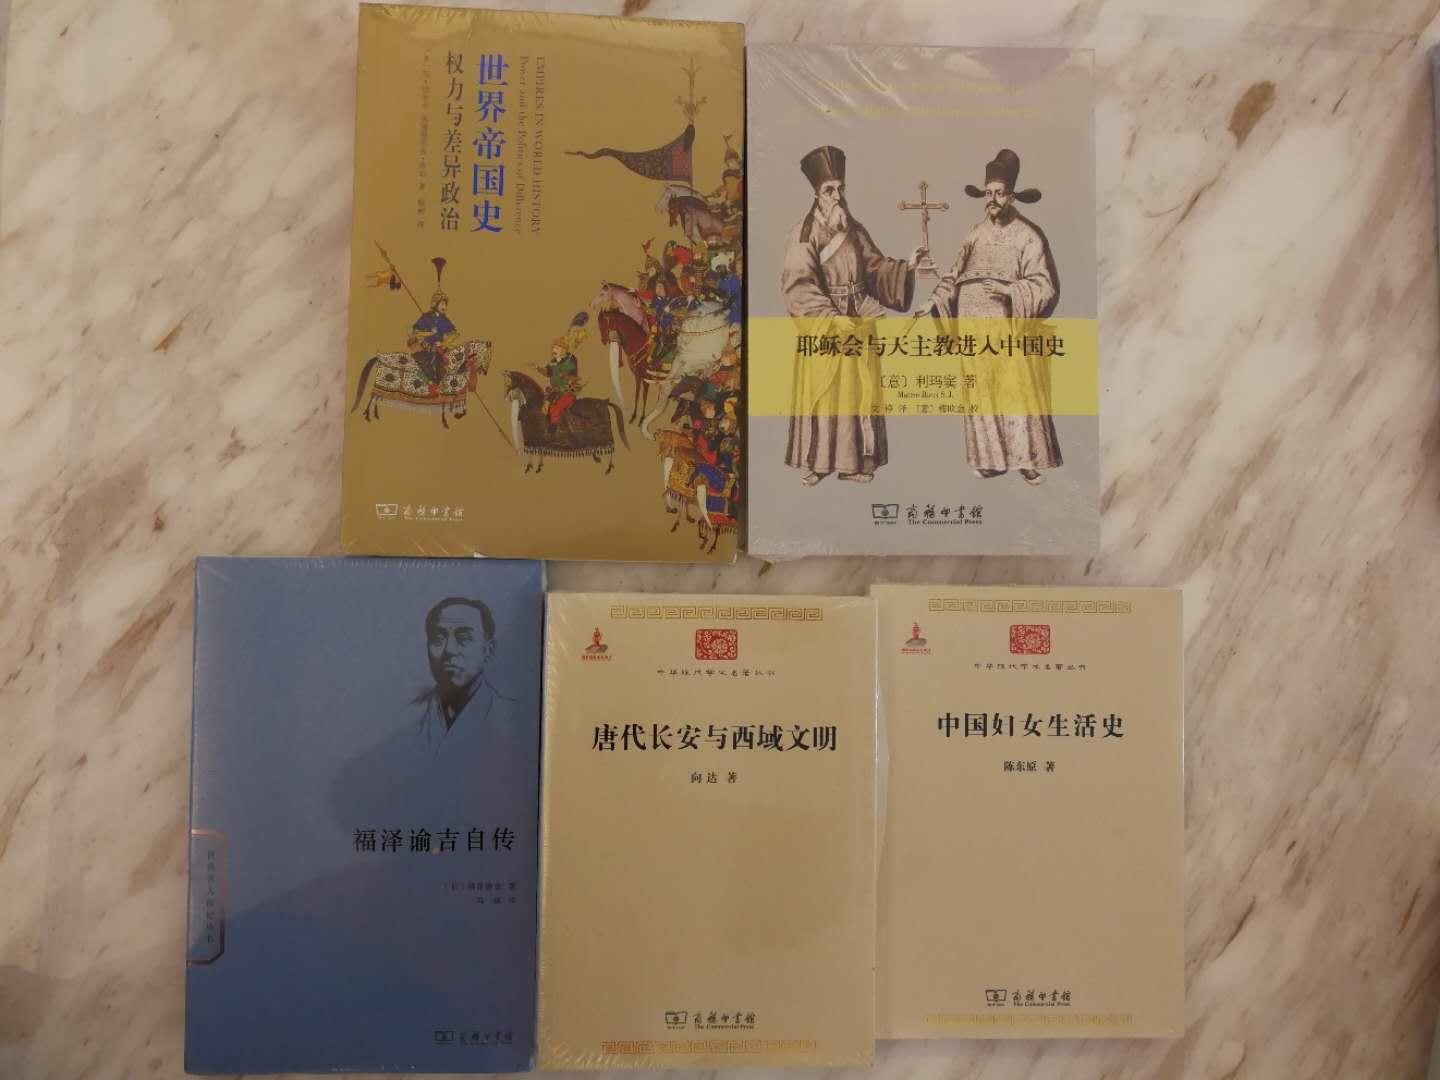 中华现代学术名著系列第五册，该书被认为是关於中国妇女史第一部系统性的论著，值得收藏